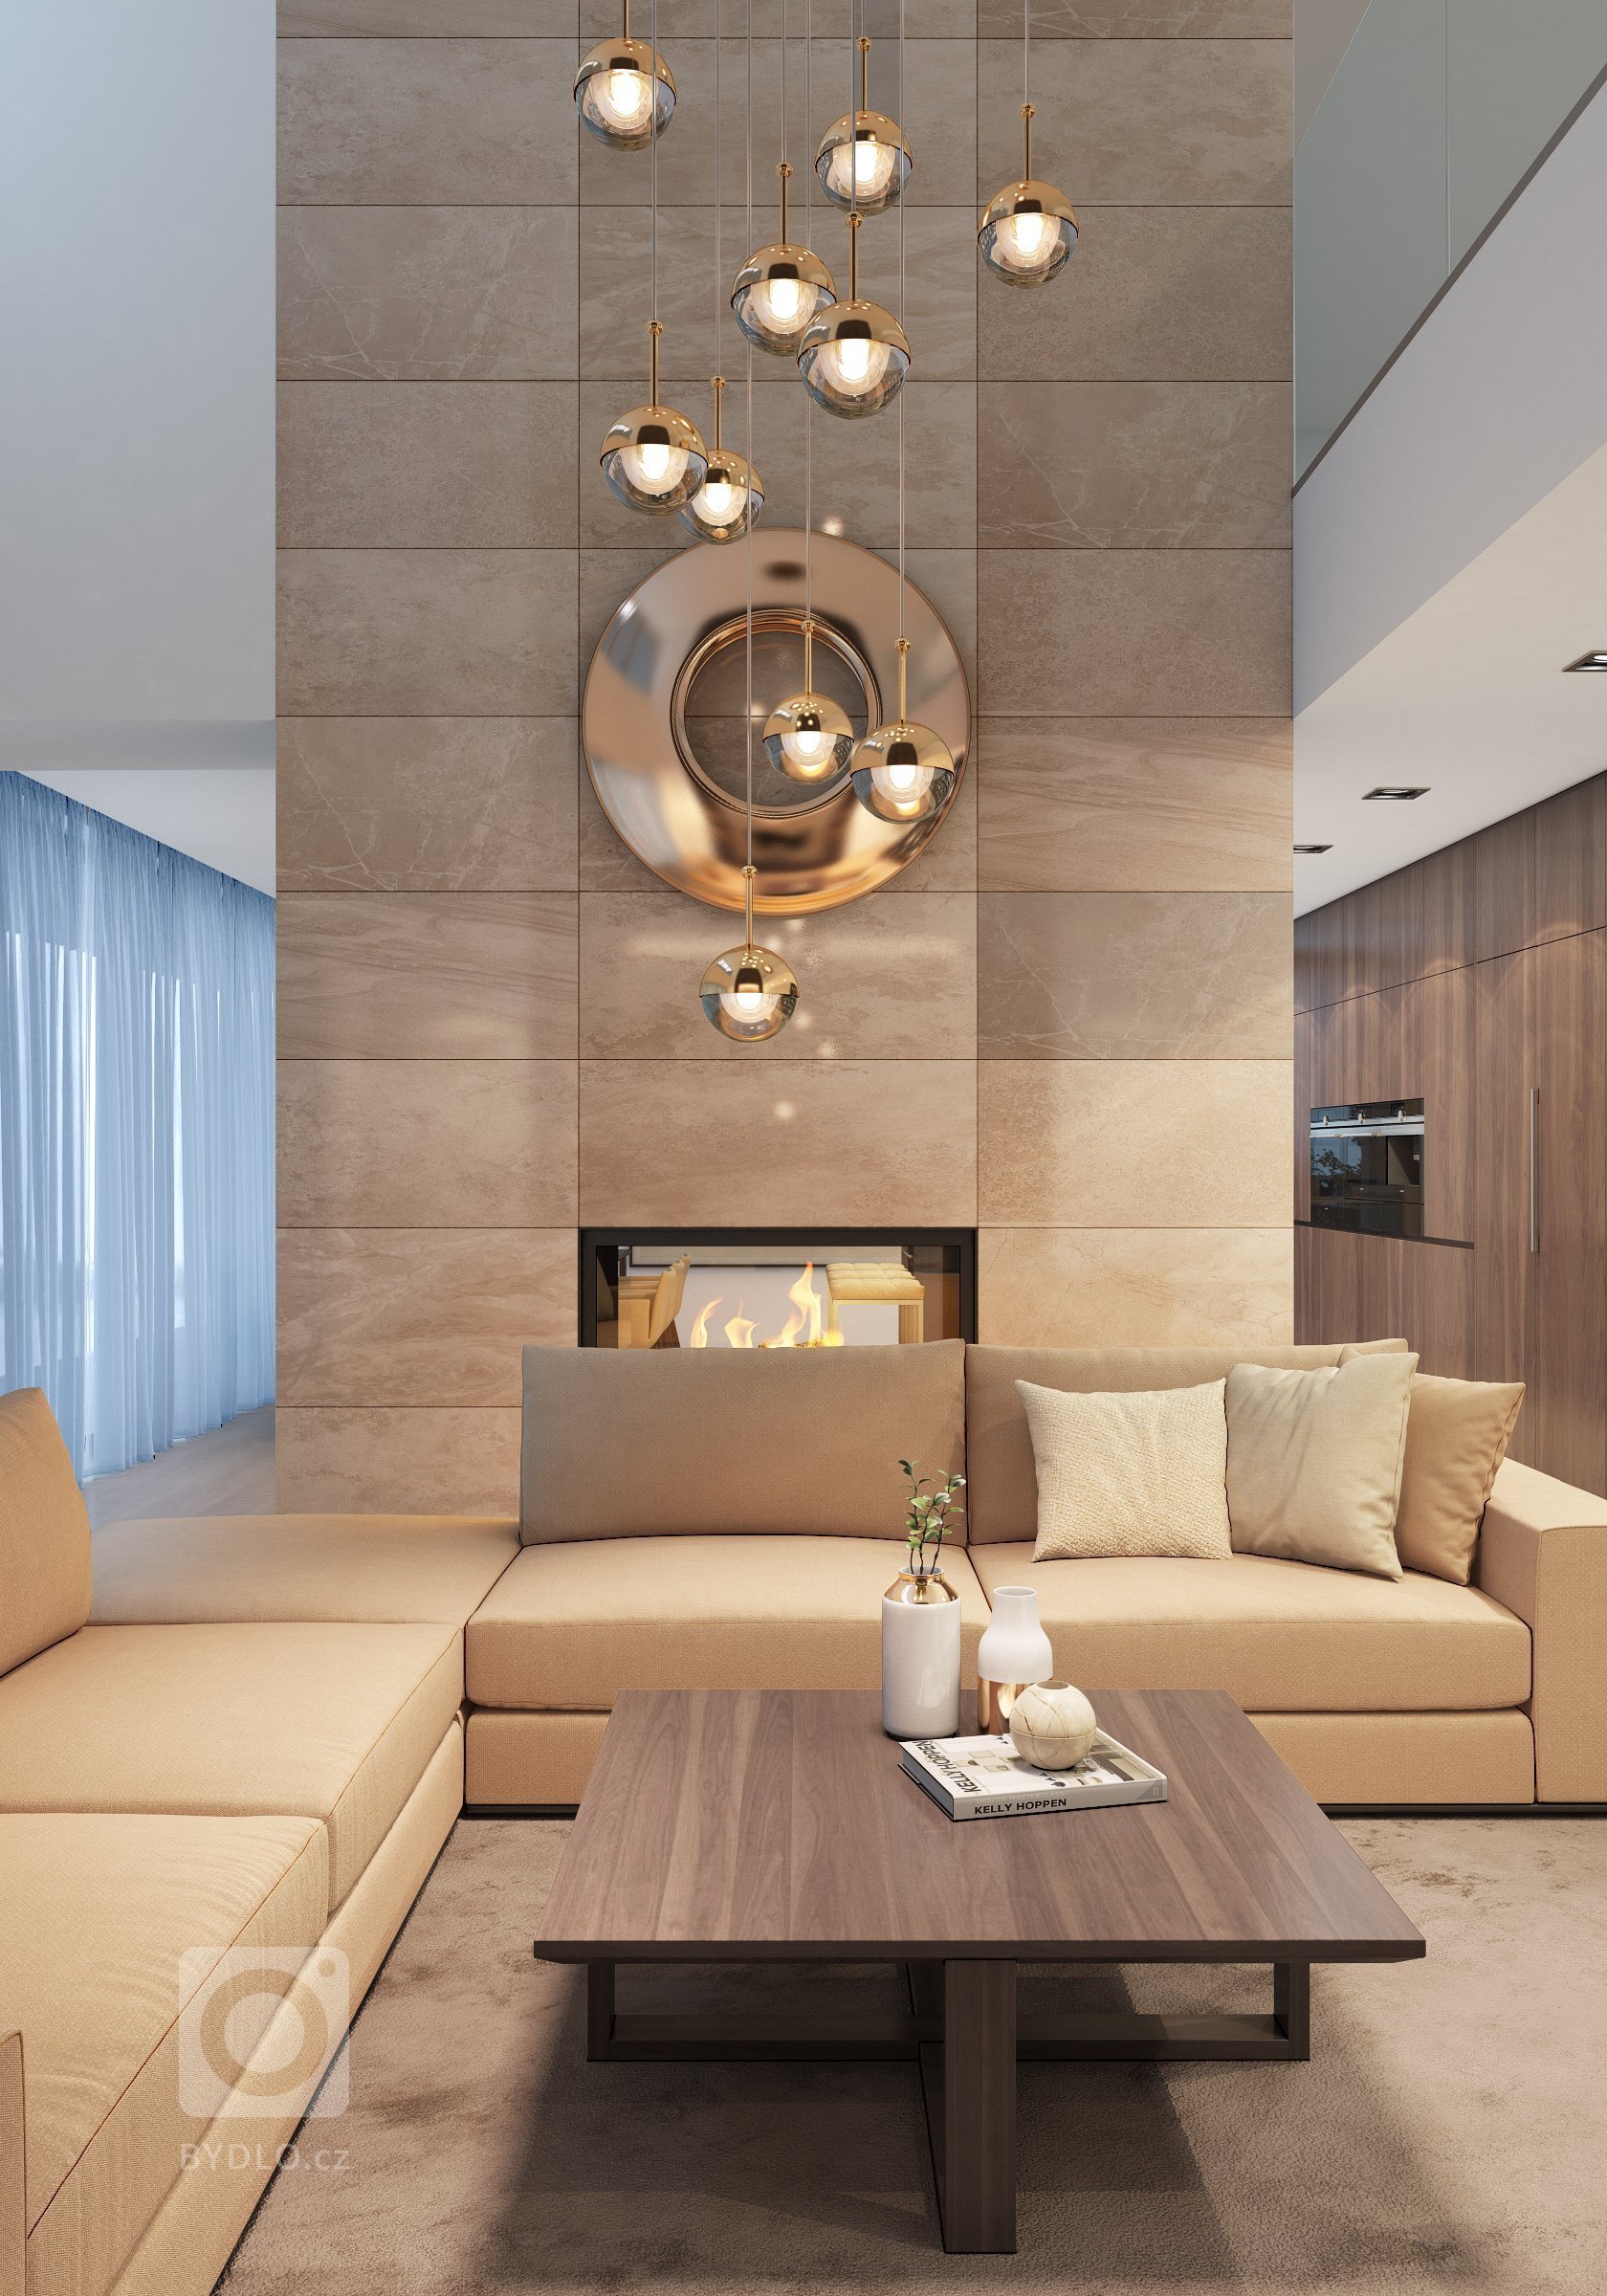 Návrh interiéru dvoupodlažního domu, kde jsou použity exkluzivní materiály s vysokou kvalitou. Interiéry jsou řešeny velkoryse, obzvláště hlavní denní prostor…